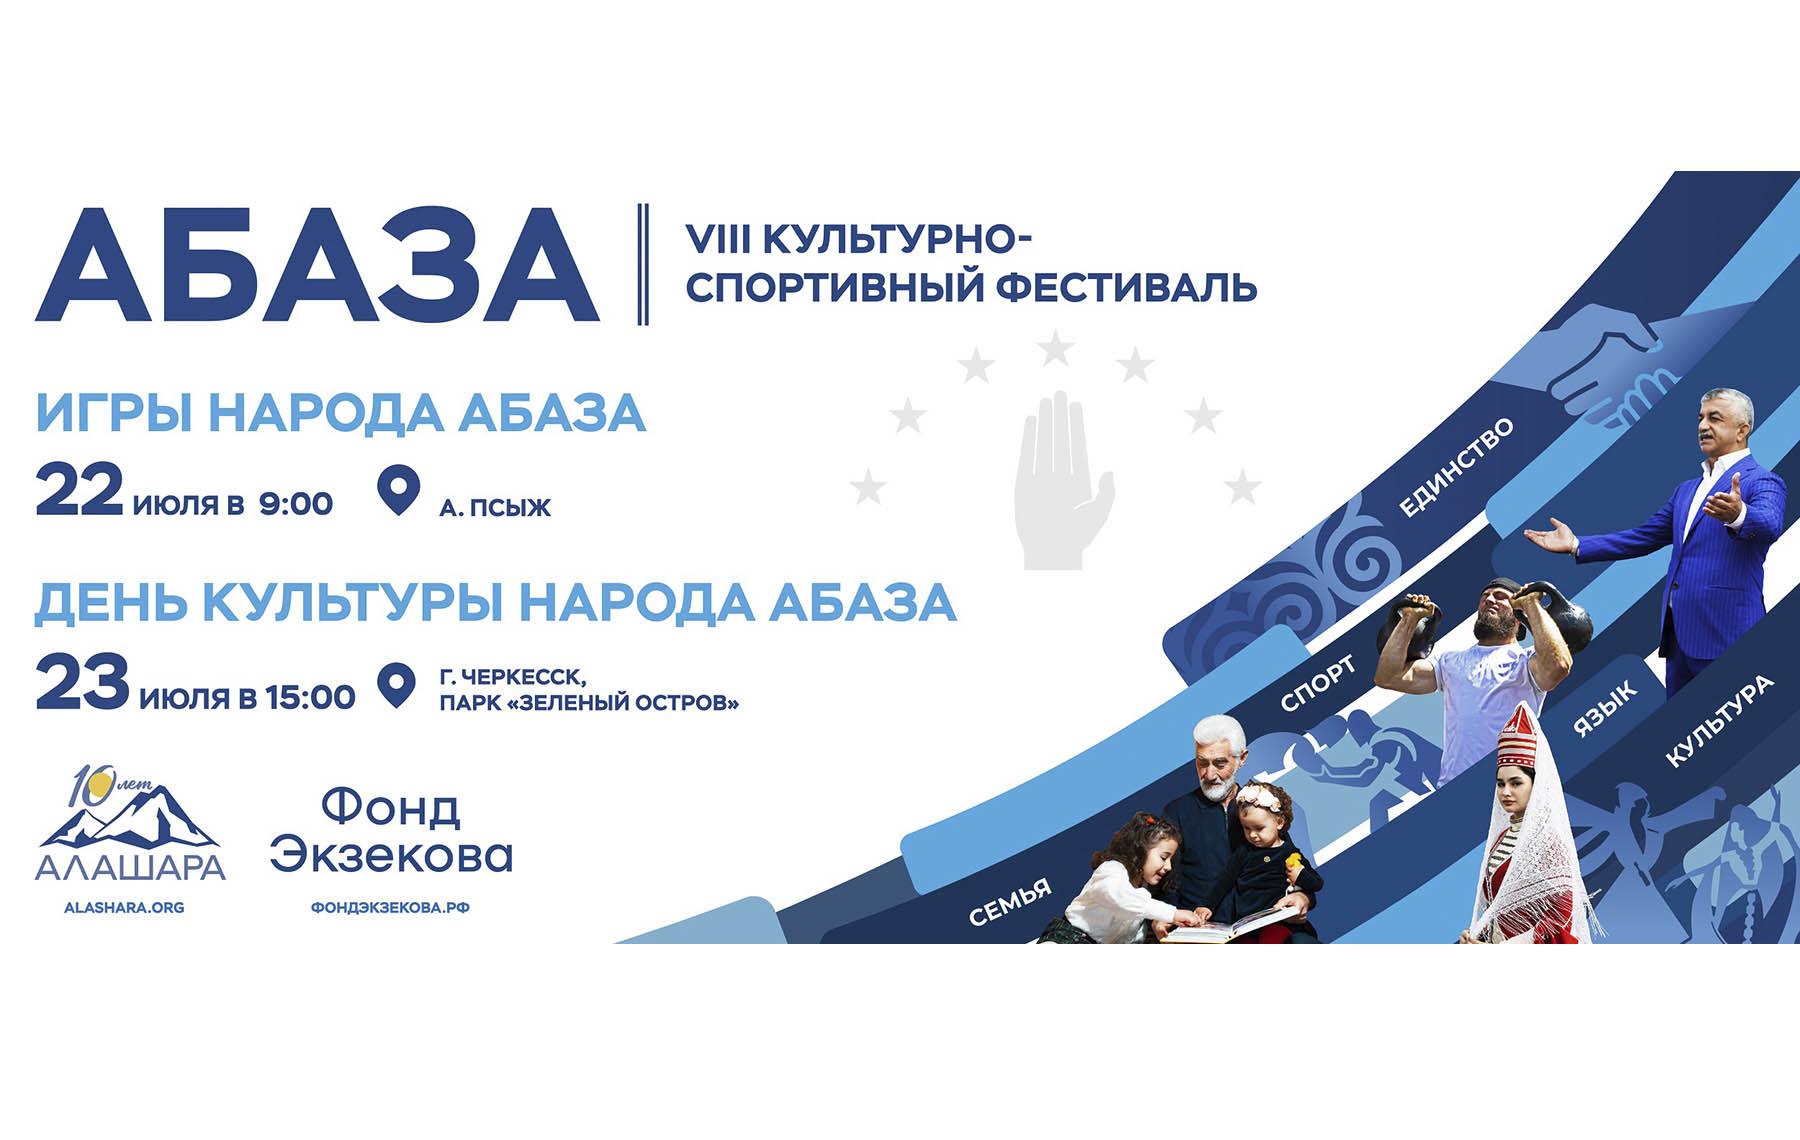 Культурно-спортивный фестиваль «Абаза» в Карачаево-Черкессии